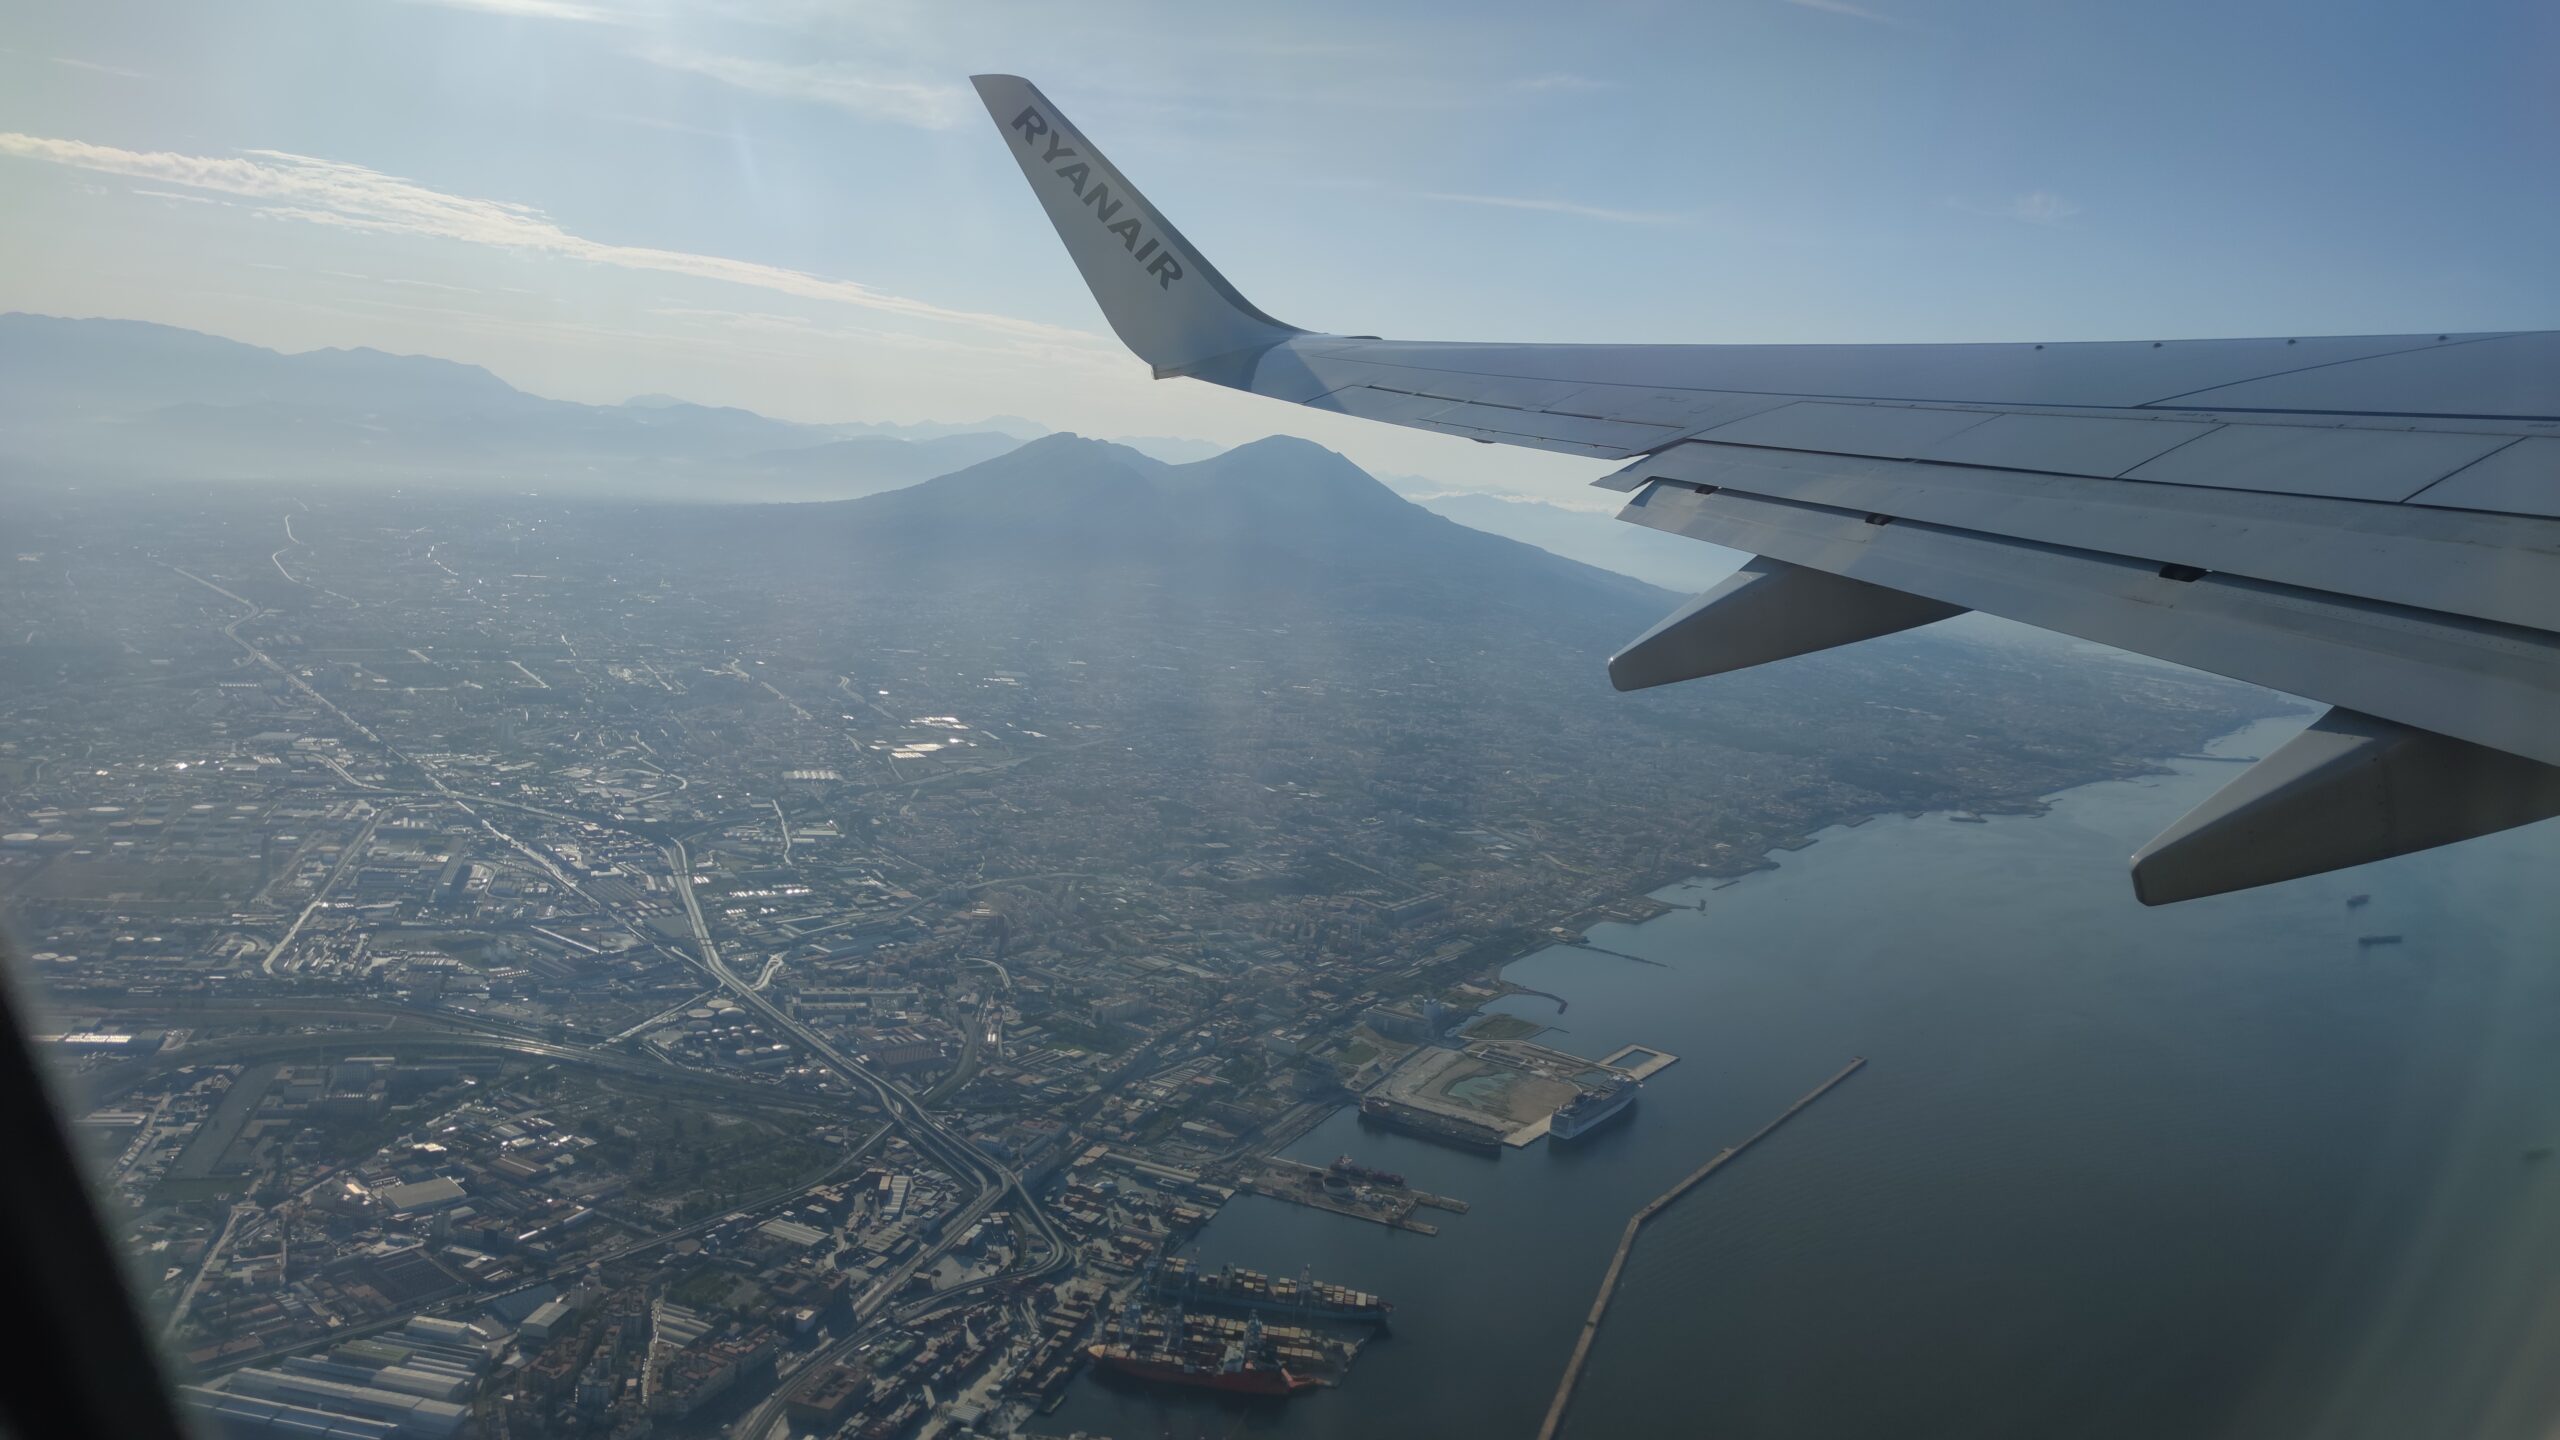 Turismo: un volo in partenza da Napoli (foto: Enrico Parolisi)